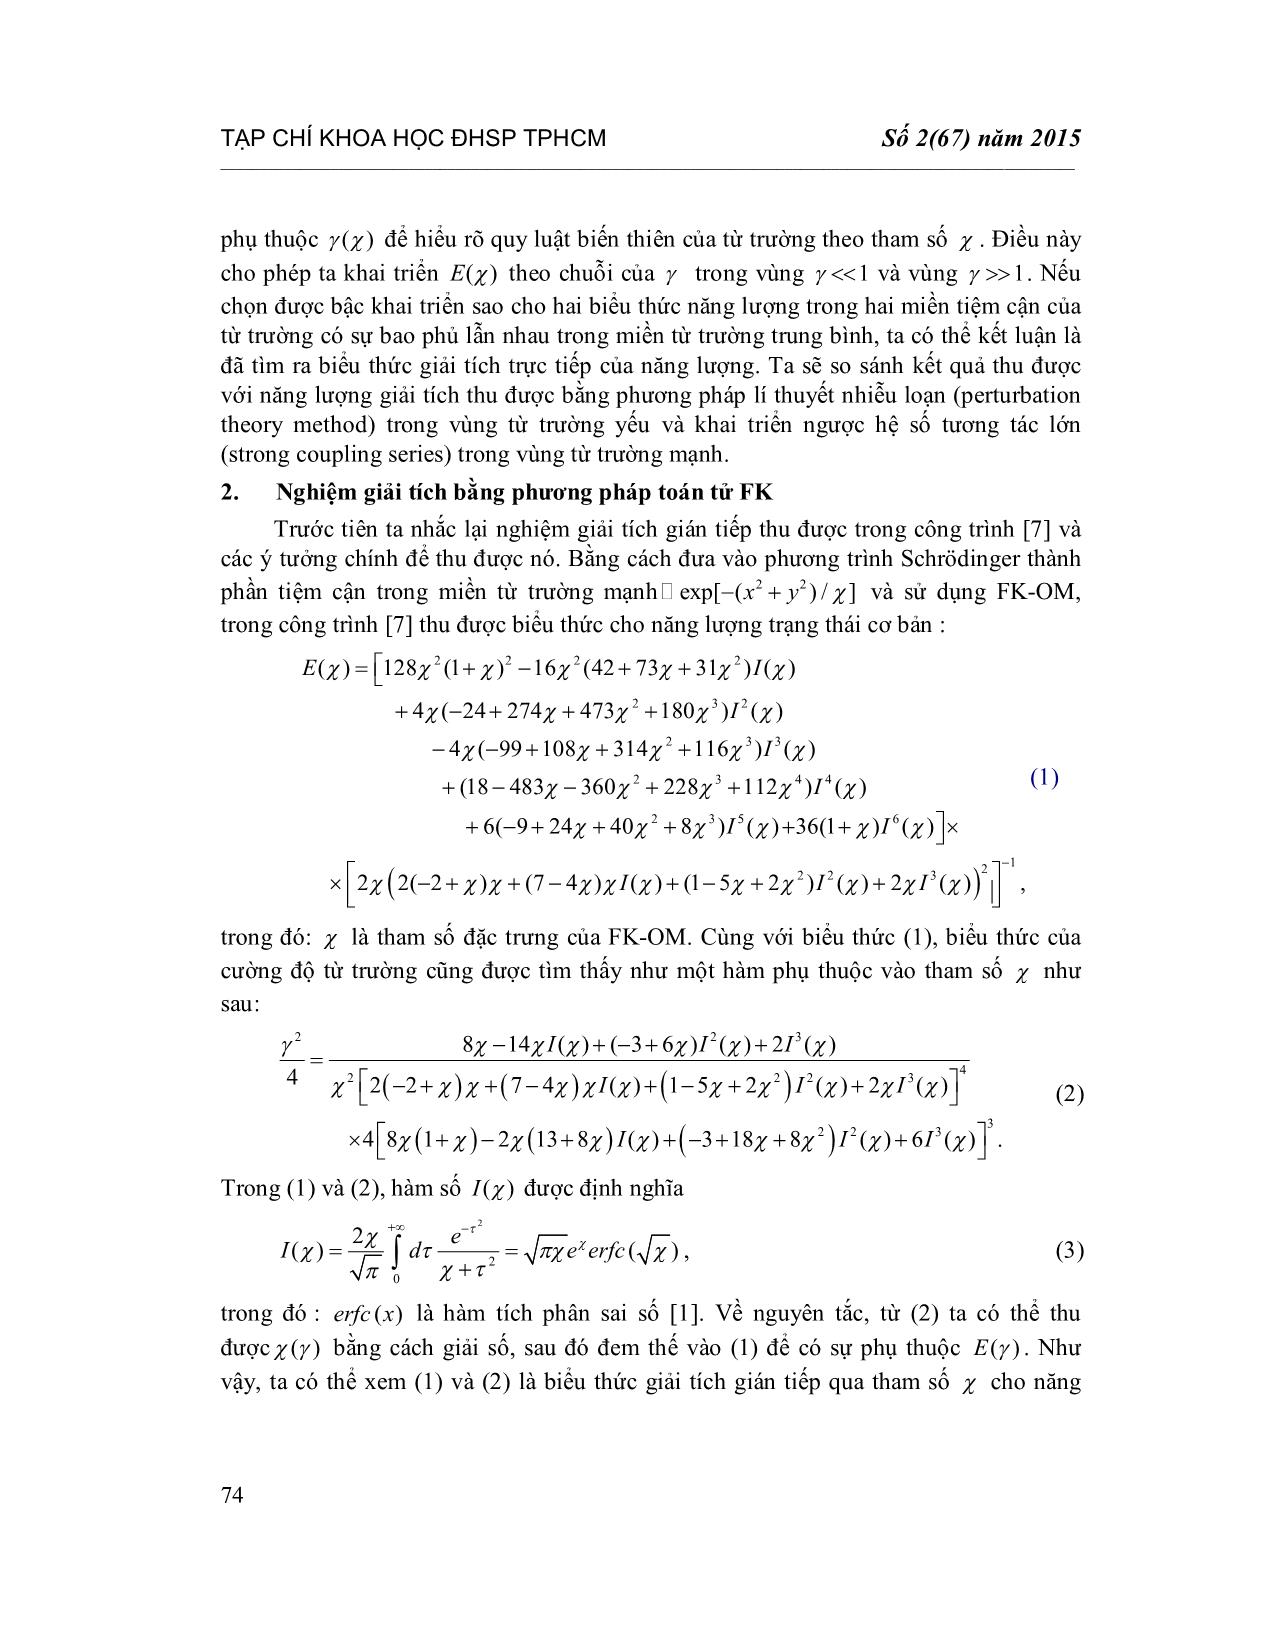 Mô tả giải tích cho năng lượng trạng thái cơ bản của Exciton hai chiều trong từ trường trang 2